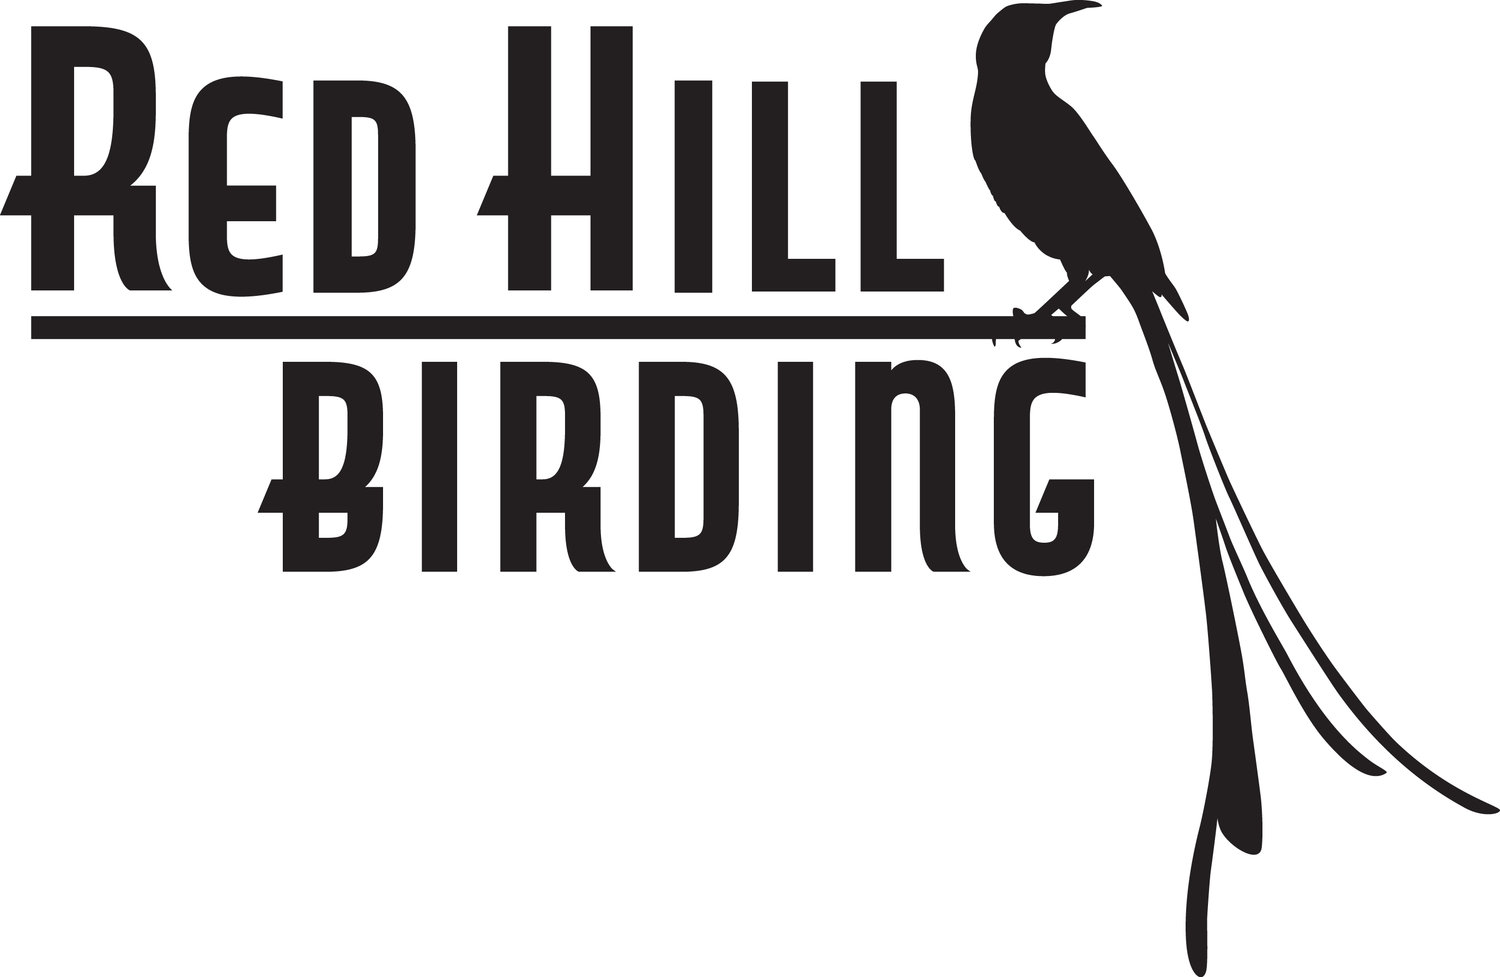 www.redhillbirding.com